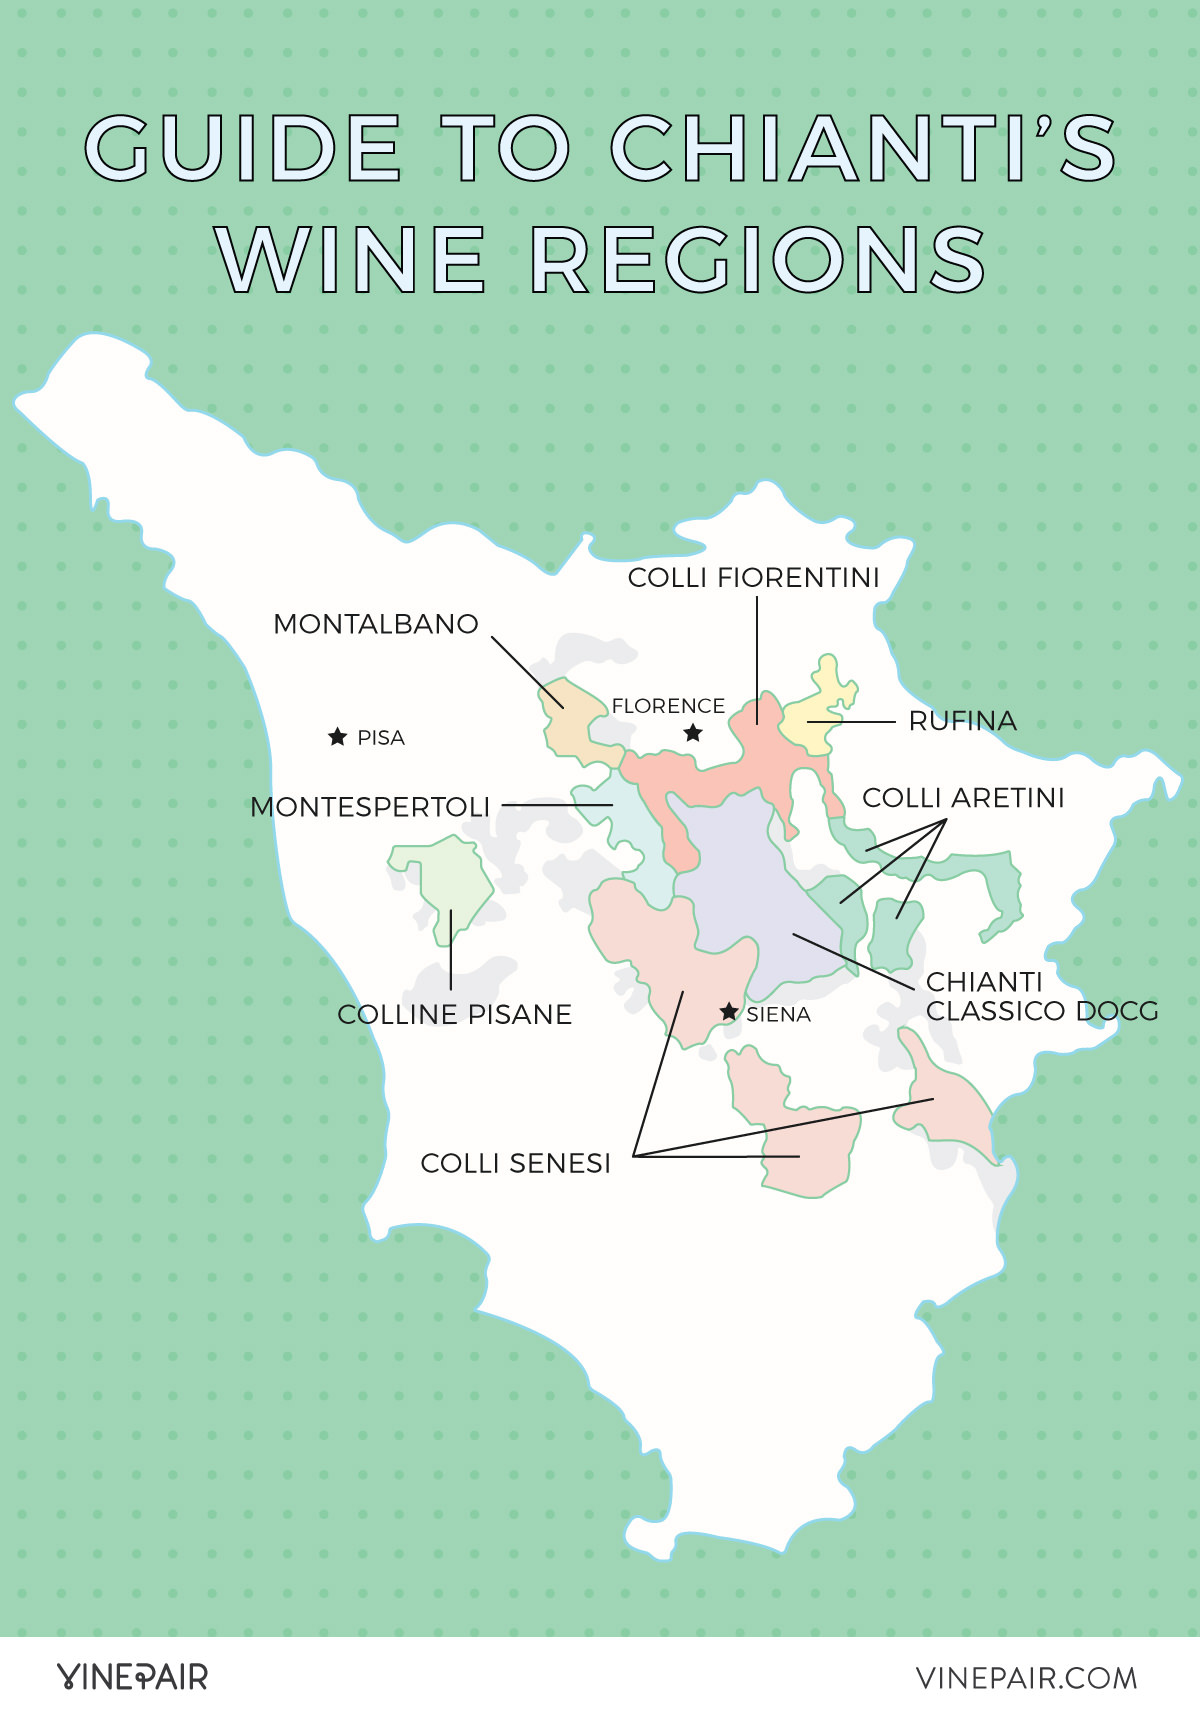 Chianti classico region map